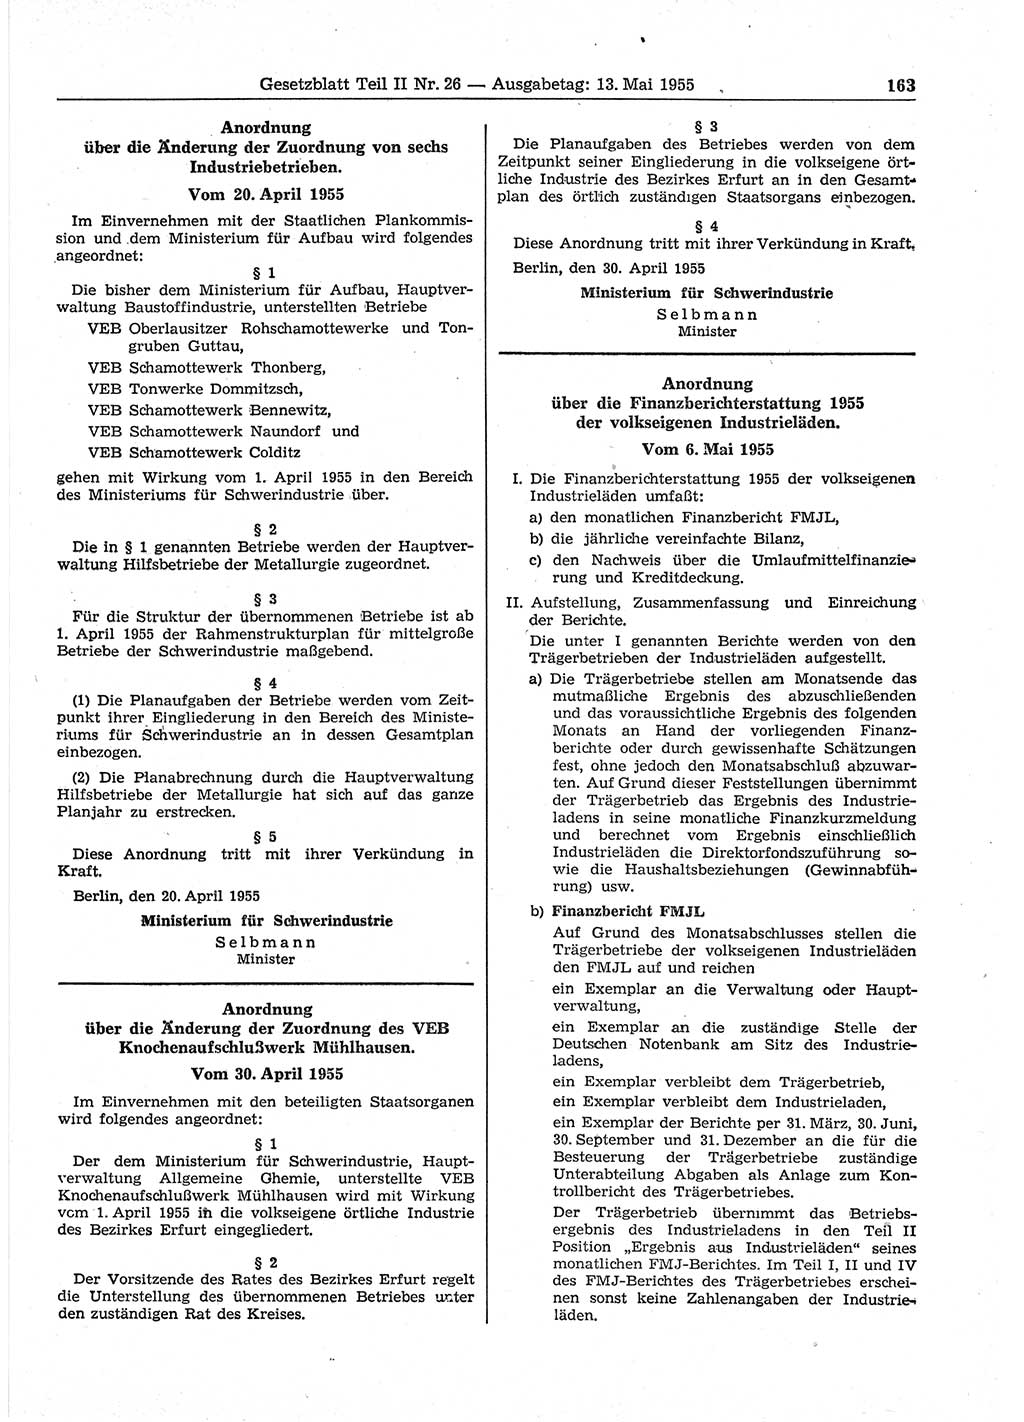 Gesetzblatt (GBl.) der Deutschen Demokratischen Republik (DDR) Teil ⅠⅠ 1955, Seite 163 (GBl. DDR ⅠⅠ 1955, S. 163)